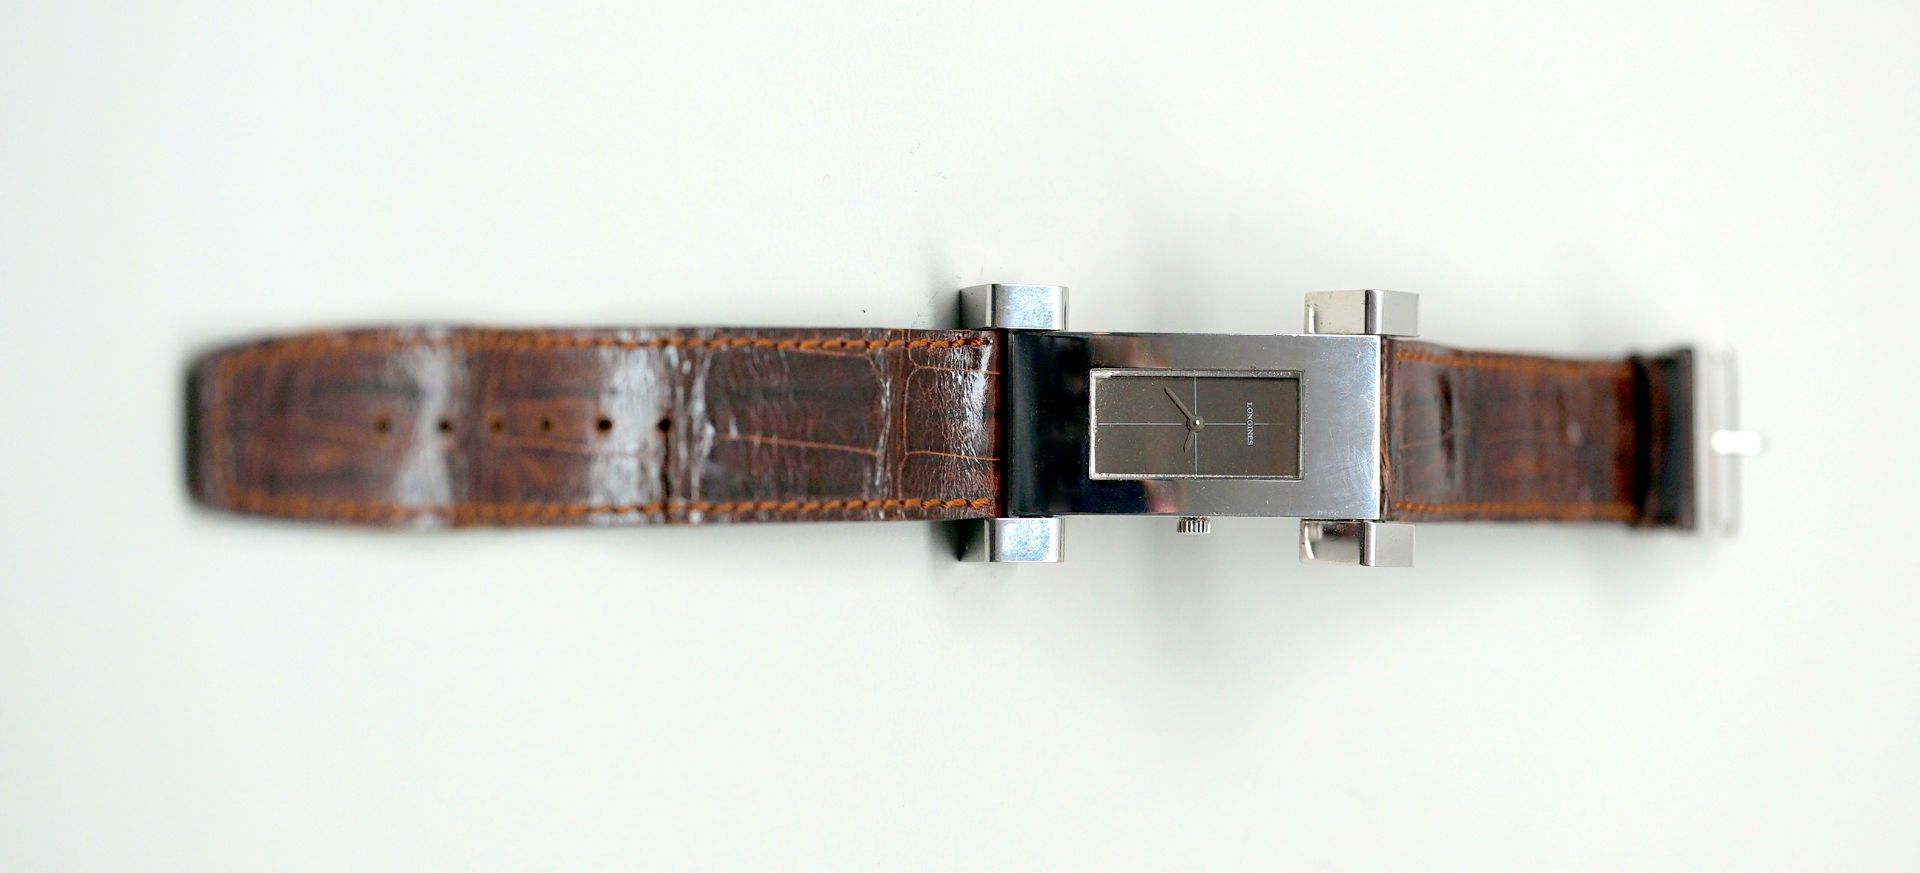 Longines, Armbanduhr Sterling Silber 925. Rückseite mit "5015 1" und "7102" nummerier - Image 2 of 3